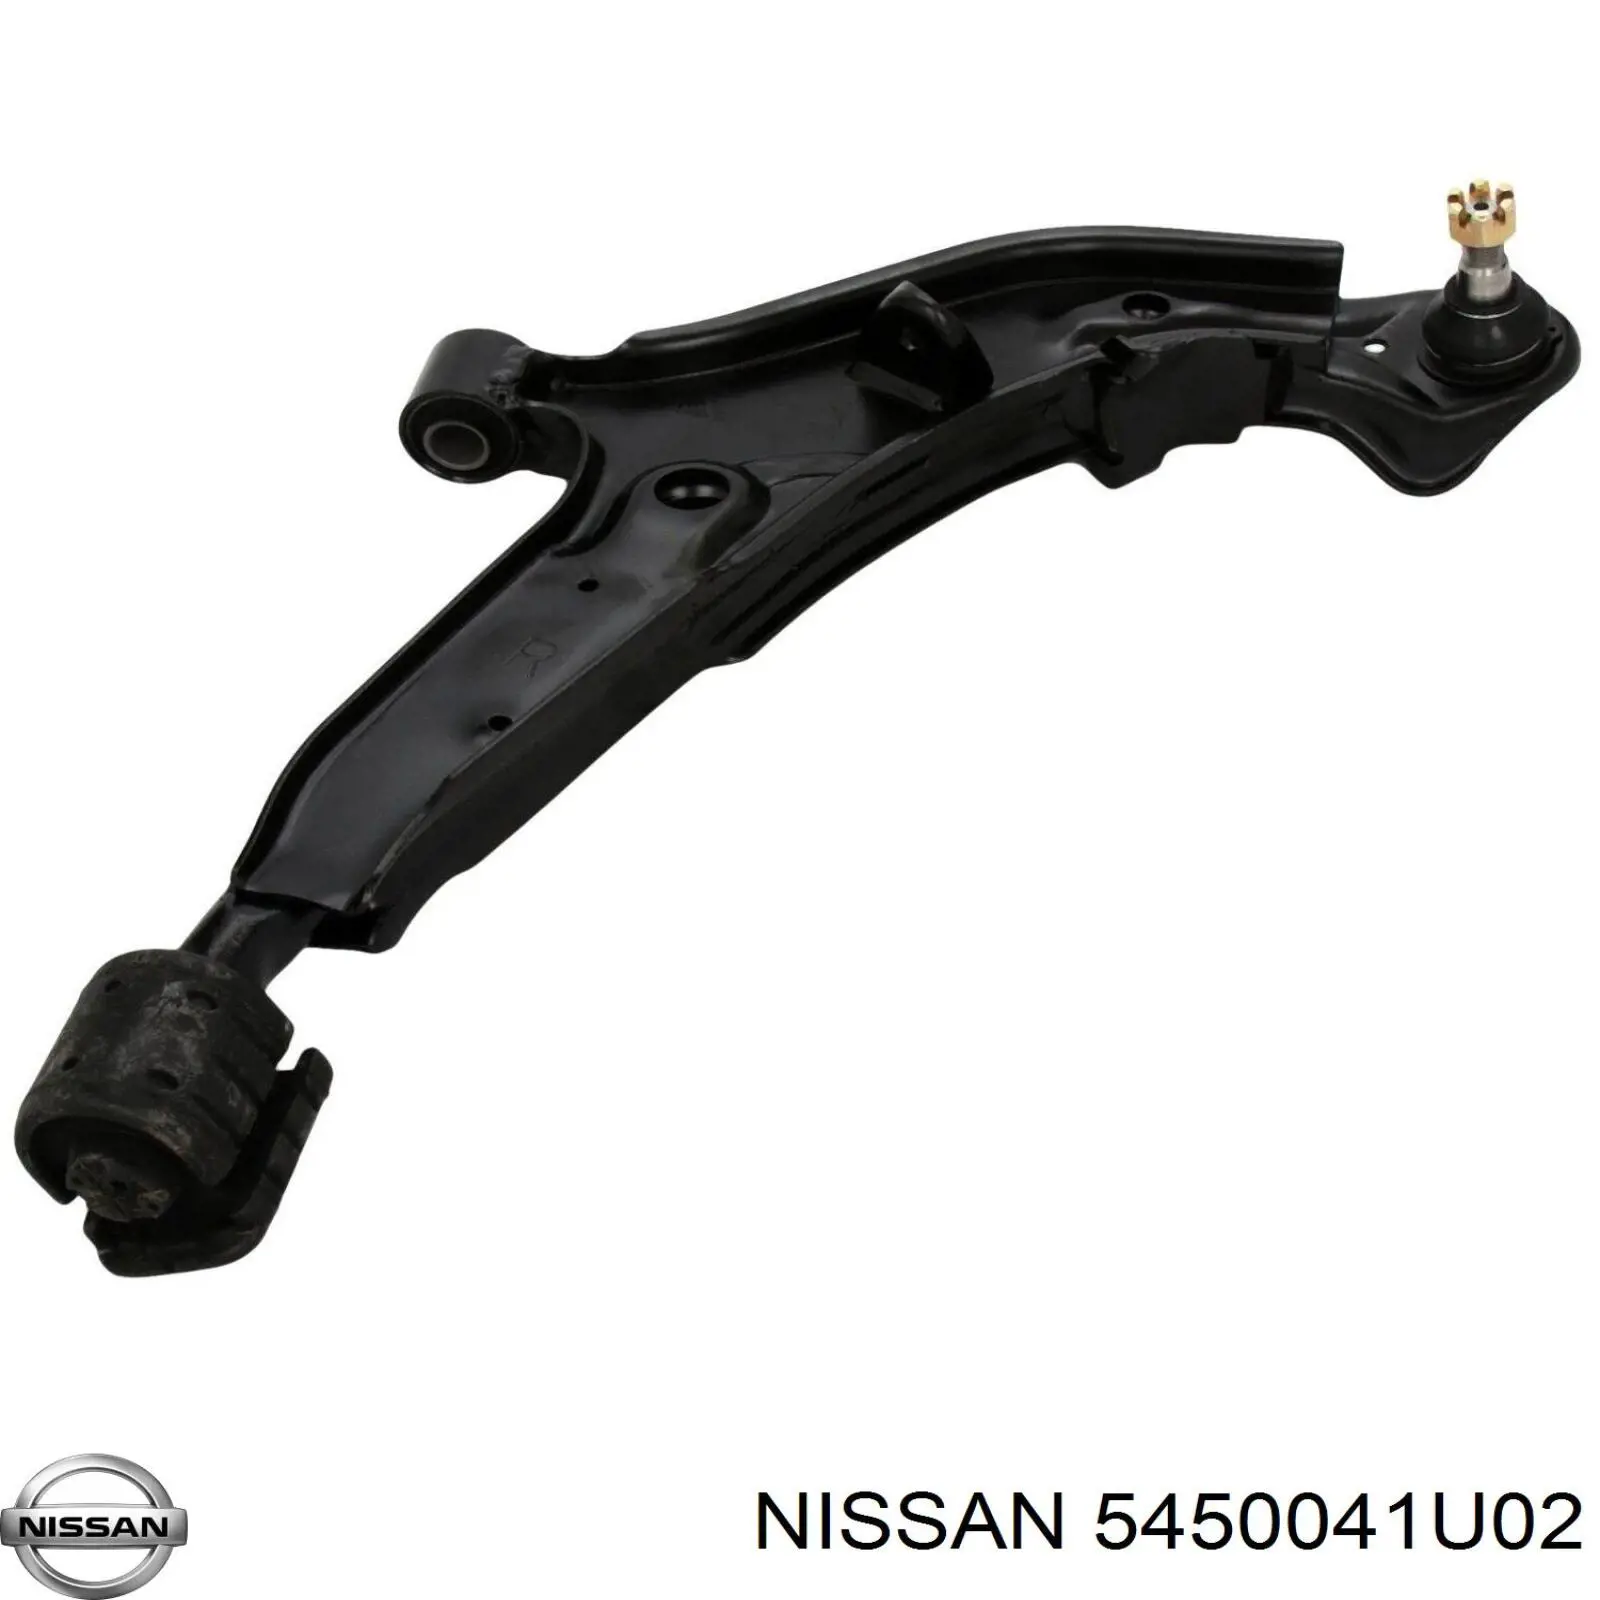 5450041U02 Nissan barra oscilante, suspensión de ruedas delantera, inferior derecha